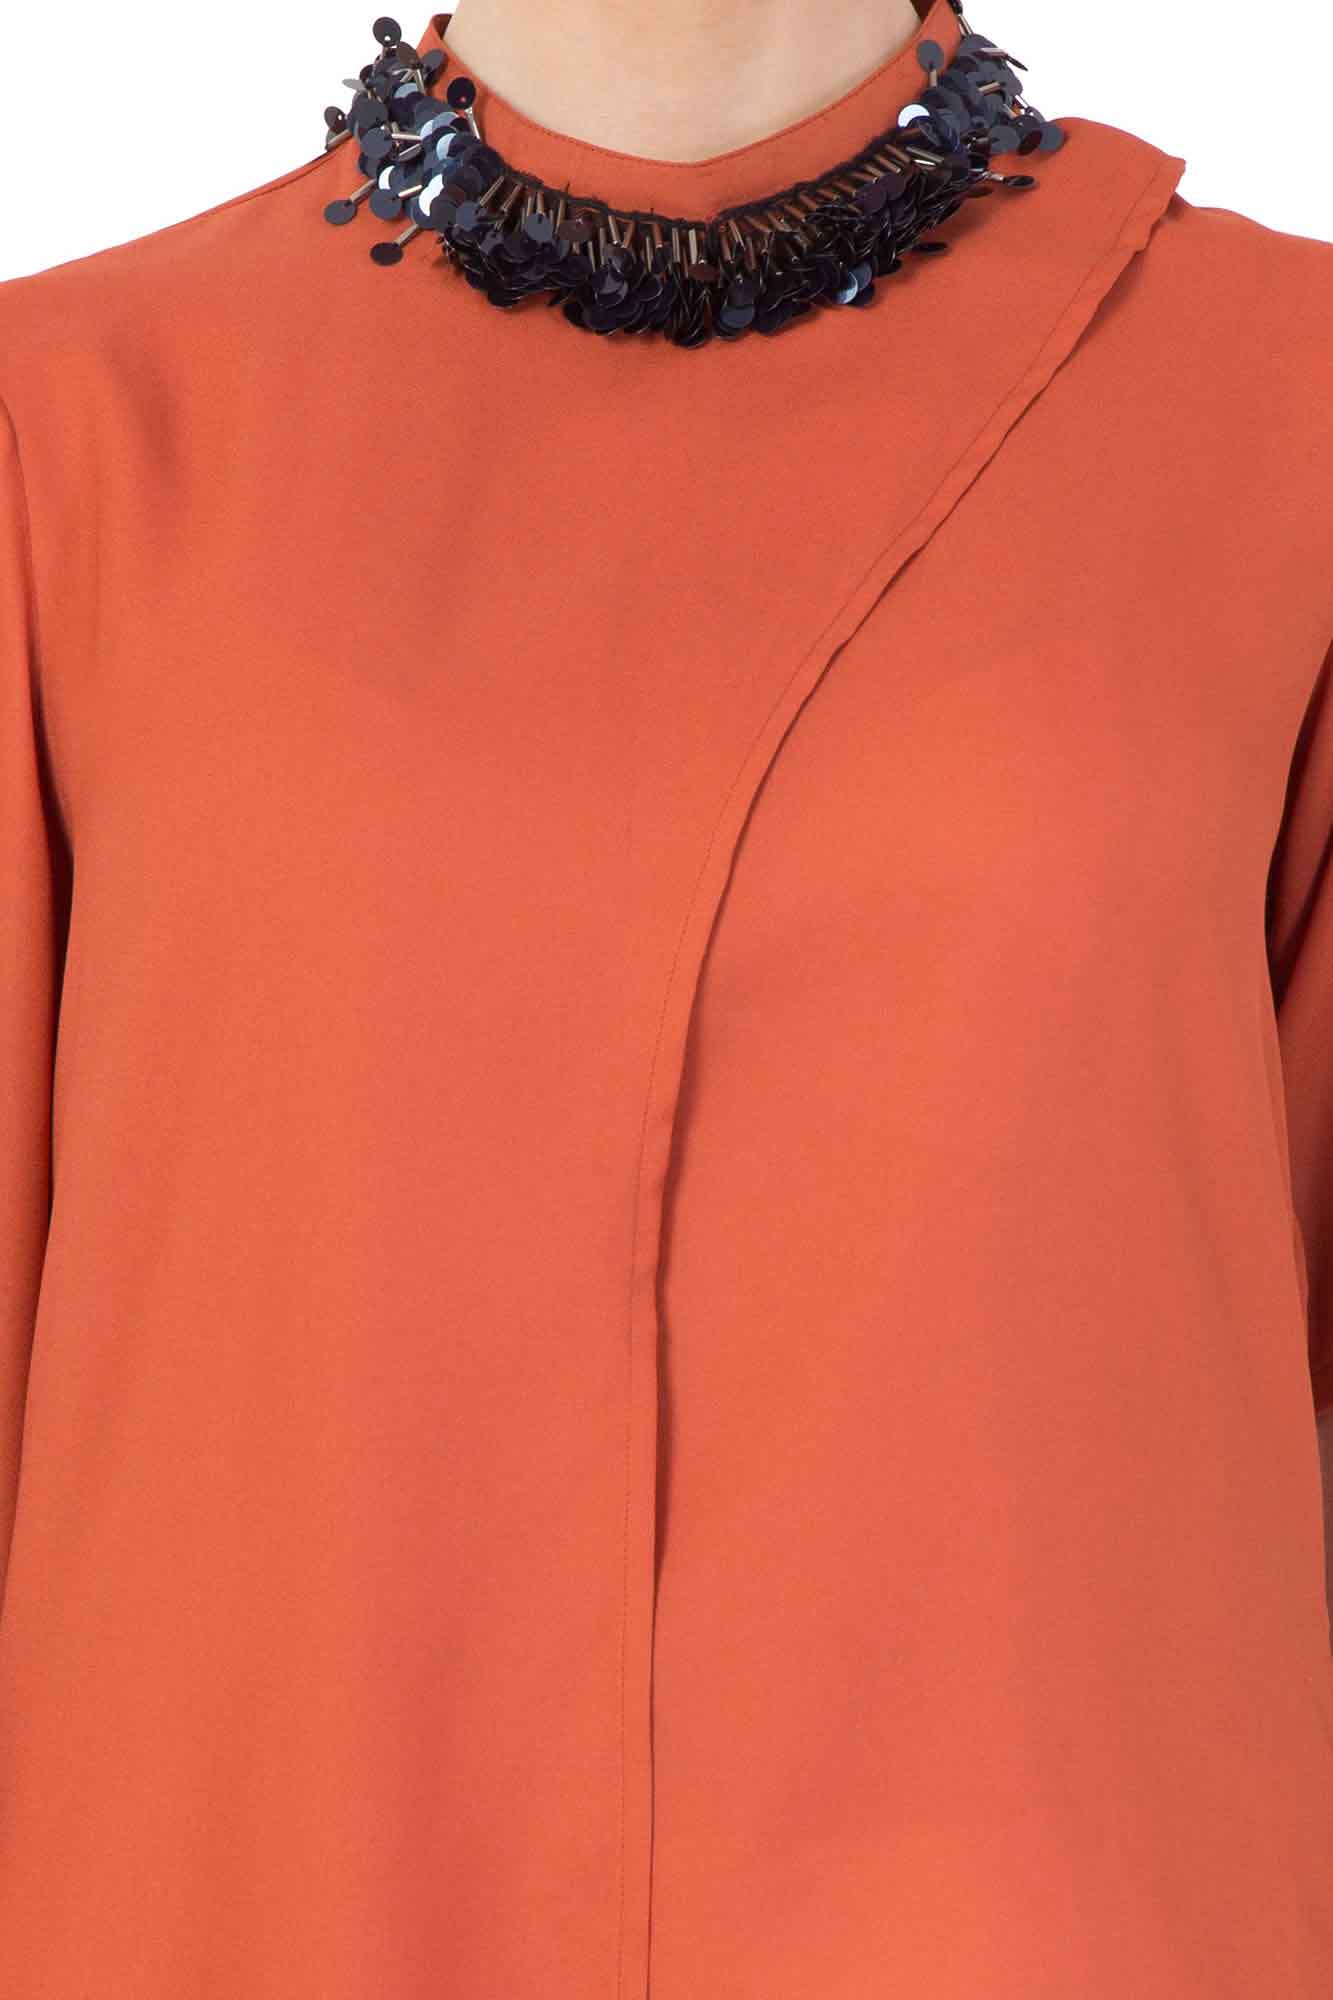 Blush Orange Metallic Collar Drape Top